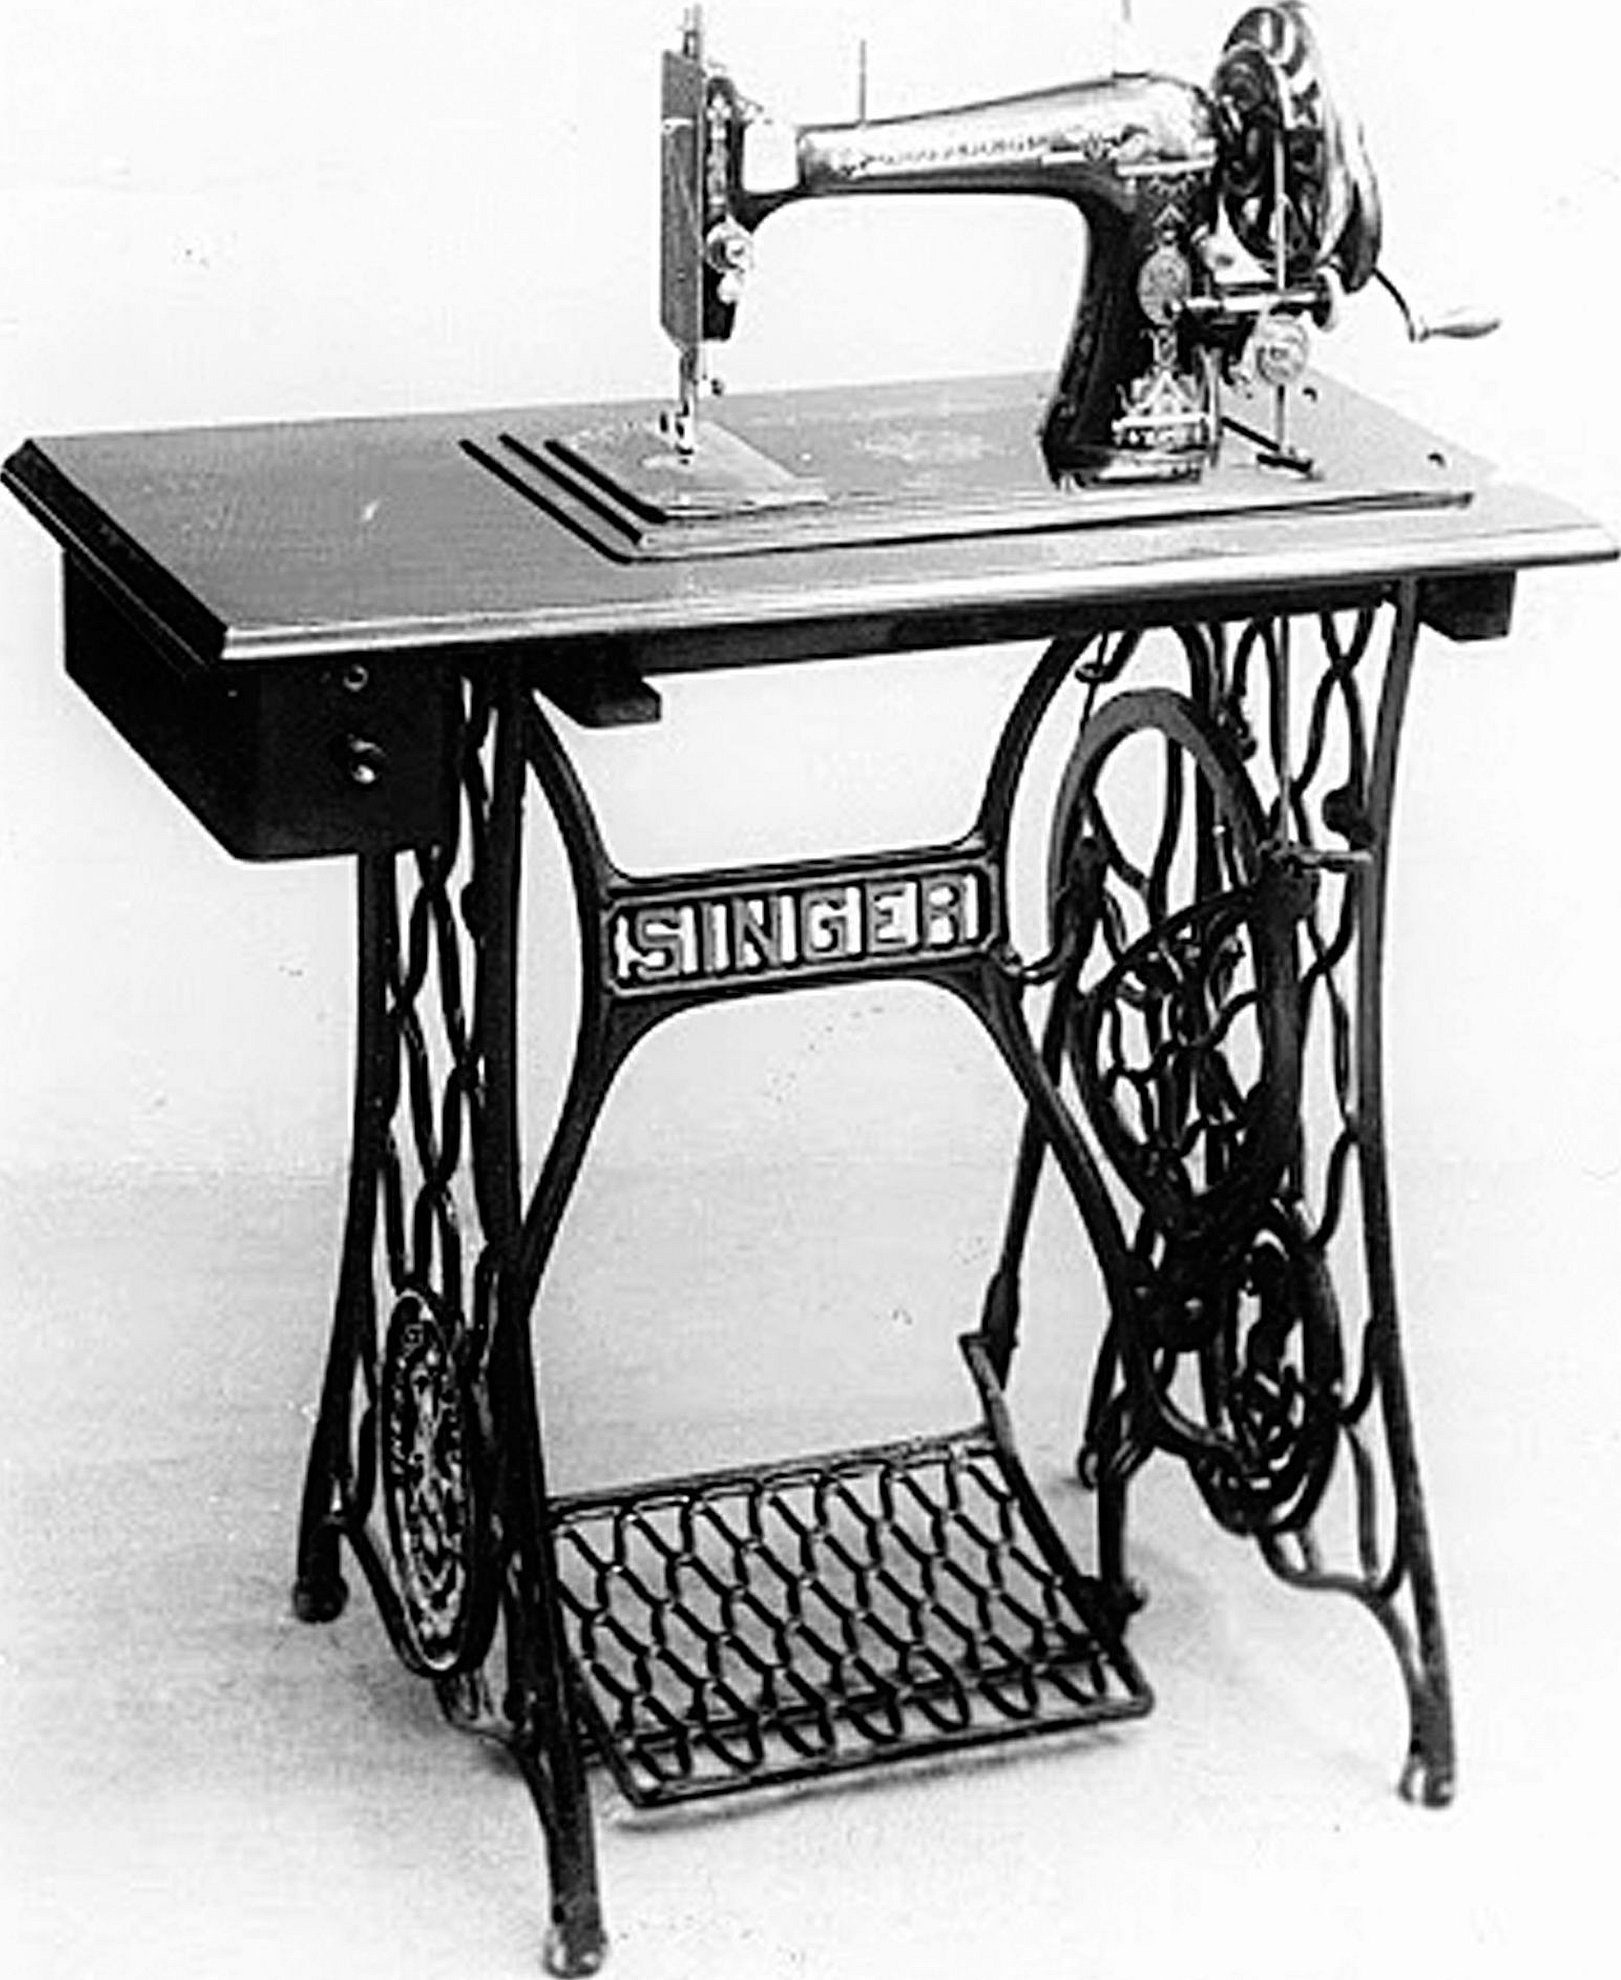 Швейная машинка зингер отзывы. Швейная машинка (Zinger super 2001). Швейная машинка Зингер ножная. Швейная машинка Зингера 1841. Швейная машинка Зингер 1895г.